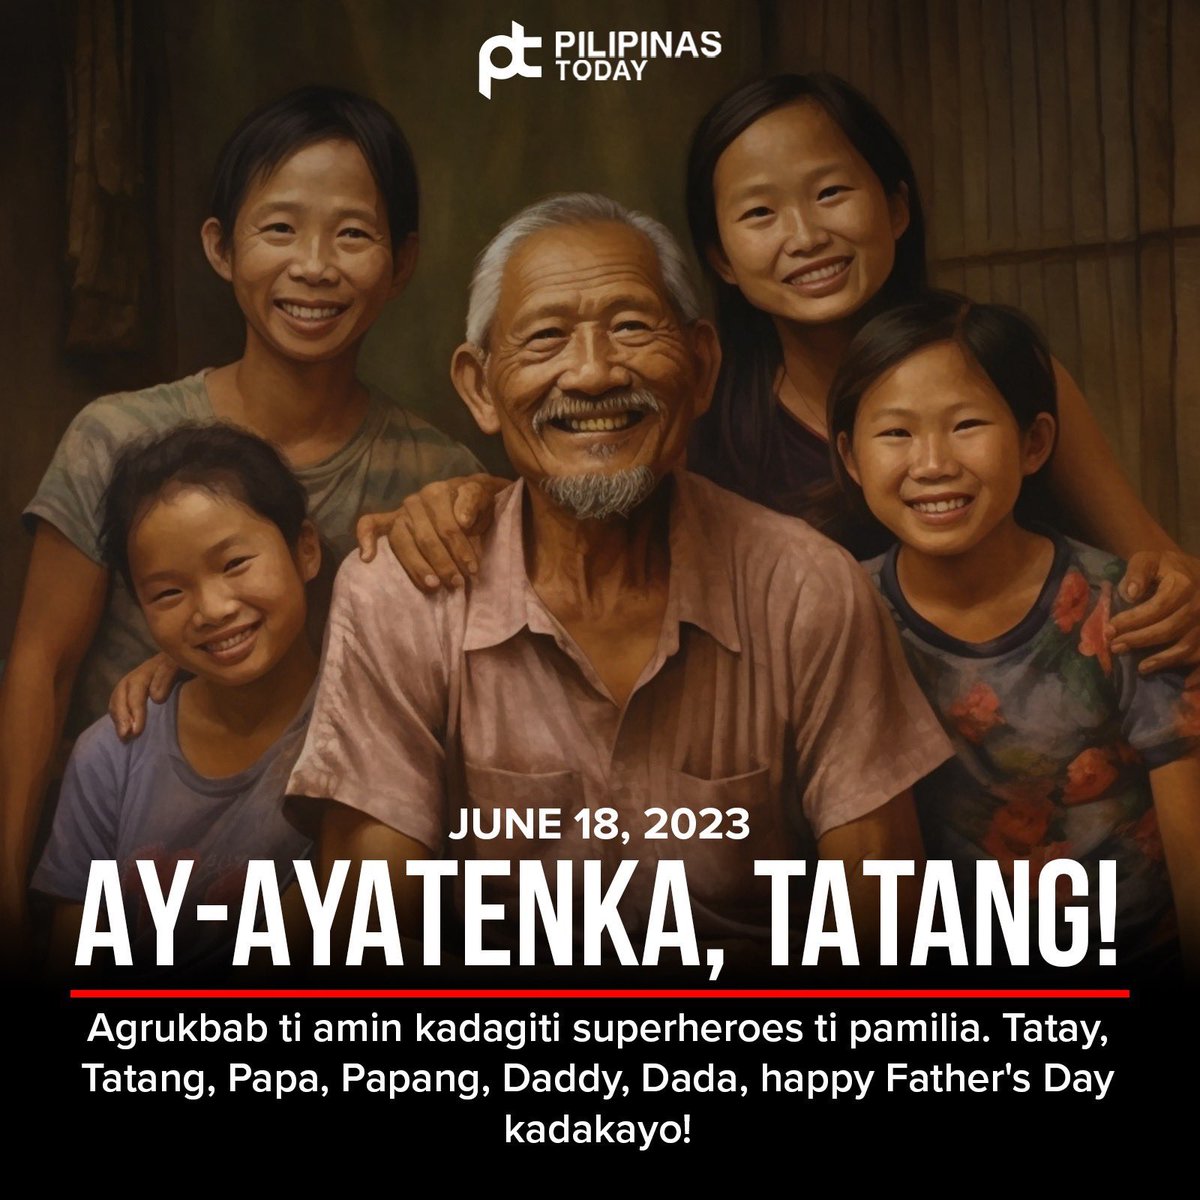 June 18, 2023. MAHAL KITA, ‘TAY! Nagpupugay ang Pilipinas Today sa mga superheroes ng pamilya. Tatay, Tatang, Papa, Daddy, Dada, happy Father’s Day po!

#PilipinasToday 
#TheWorldTonight
#FathersDay2023